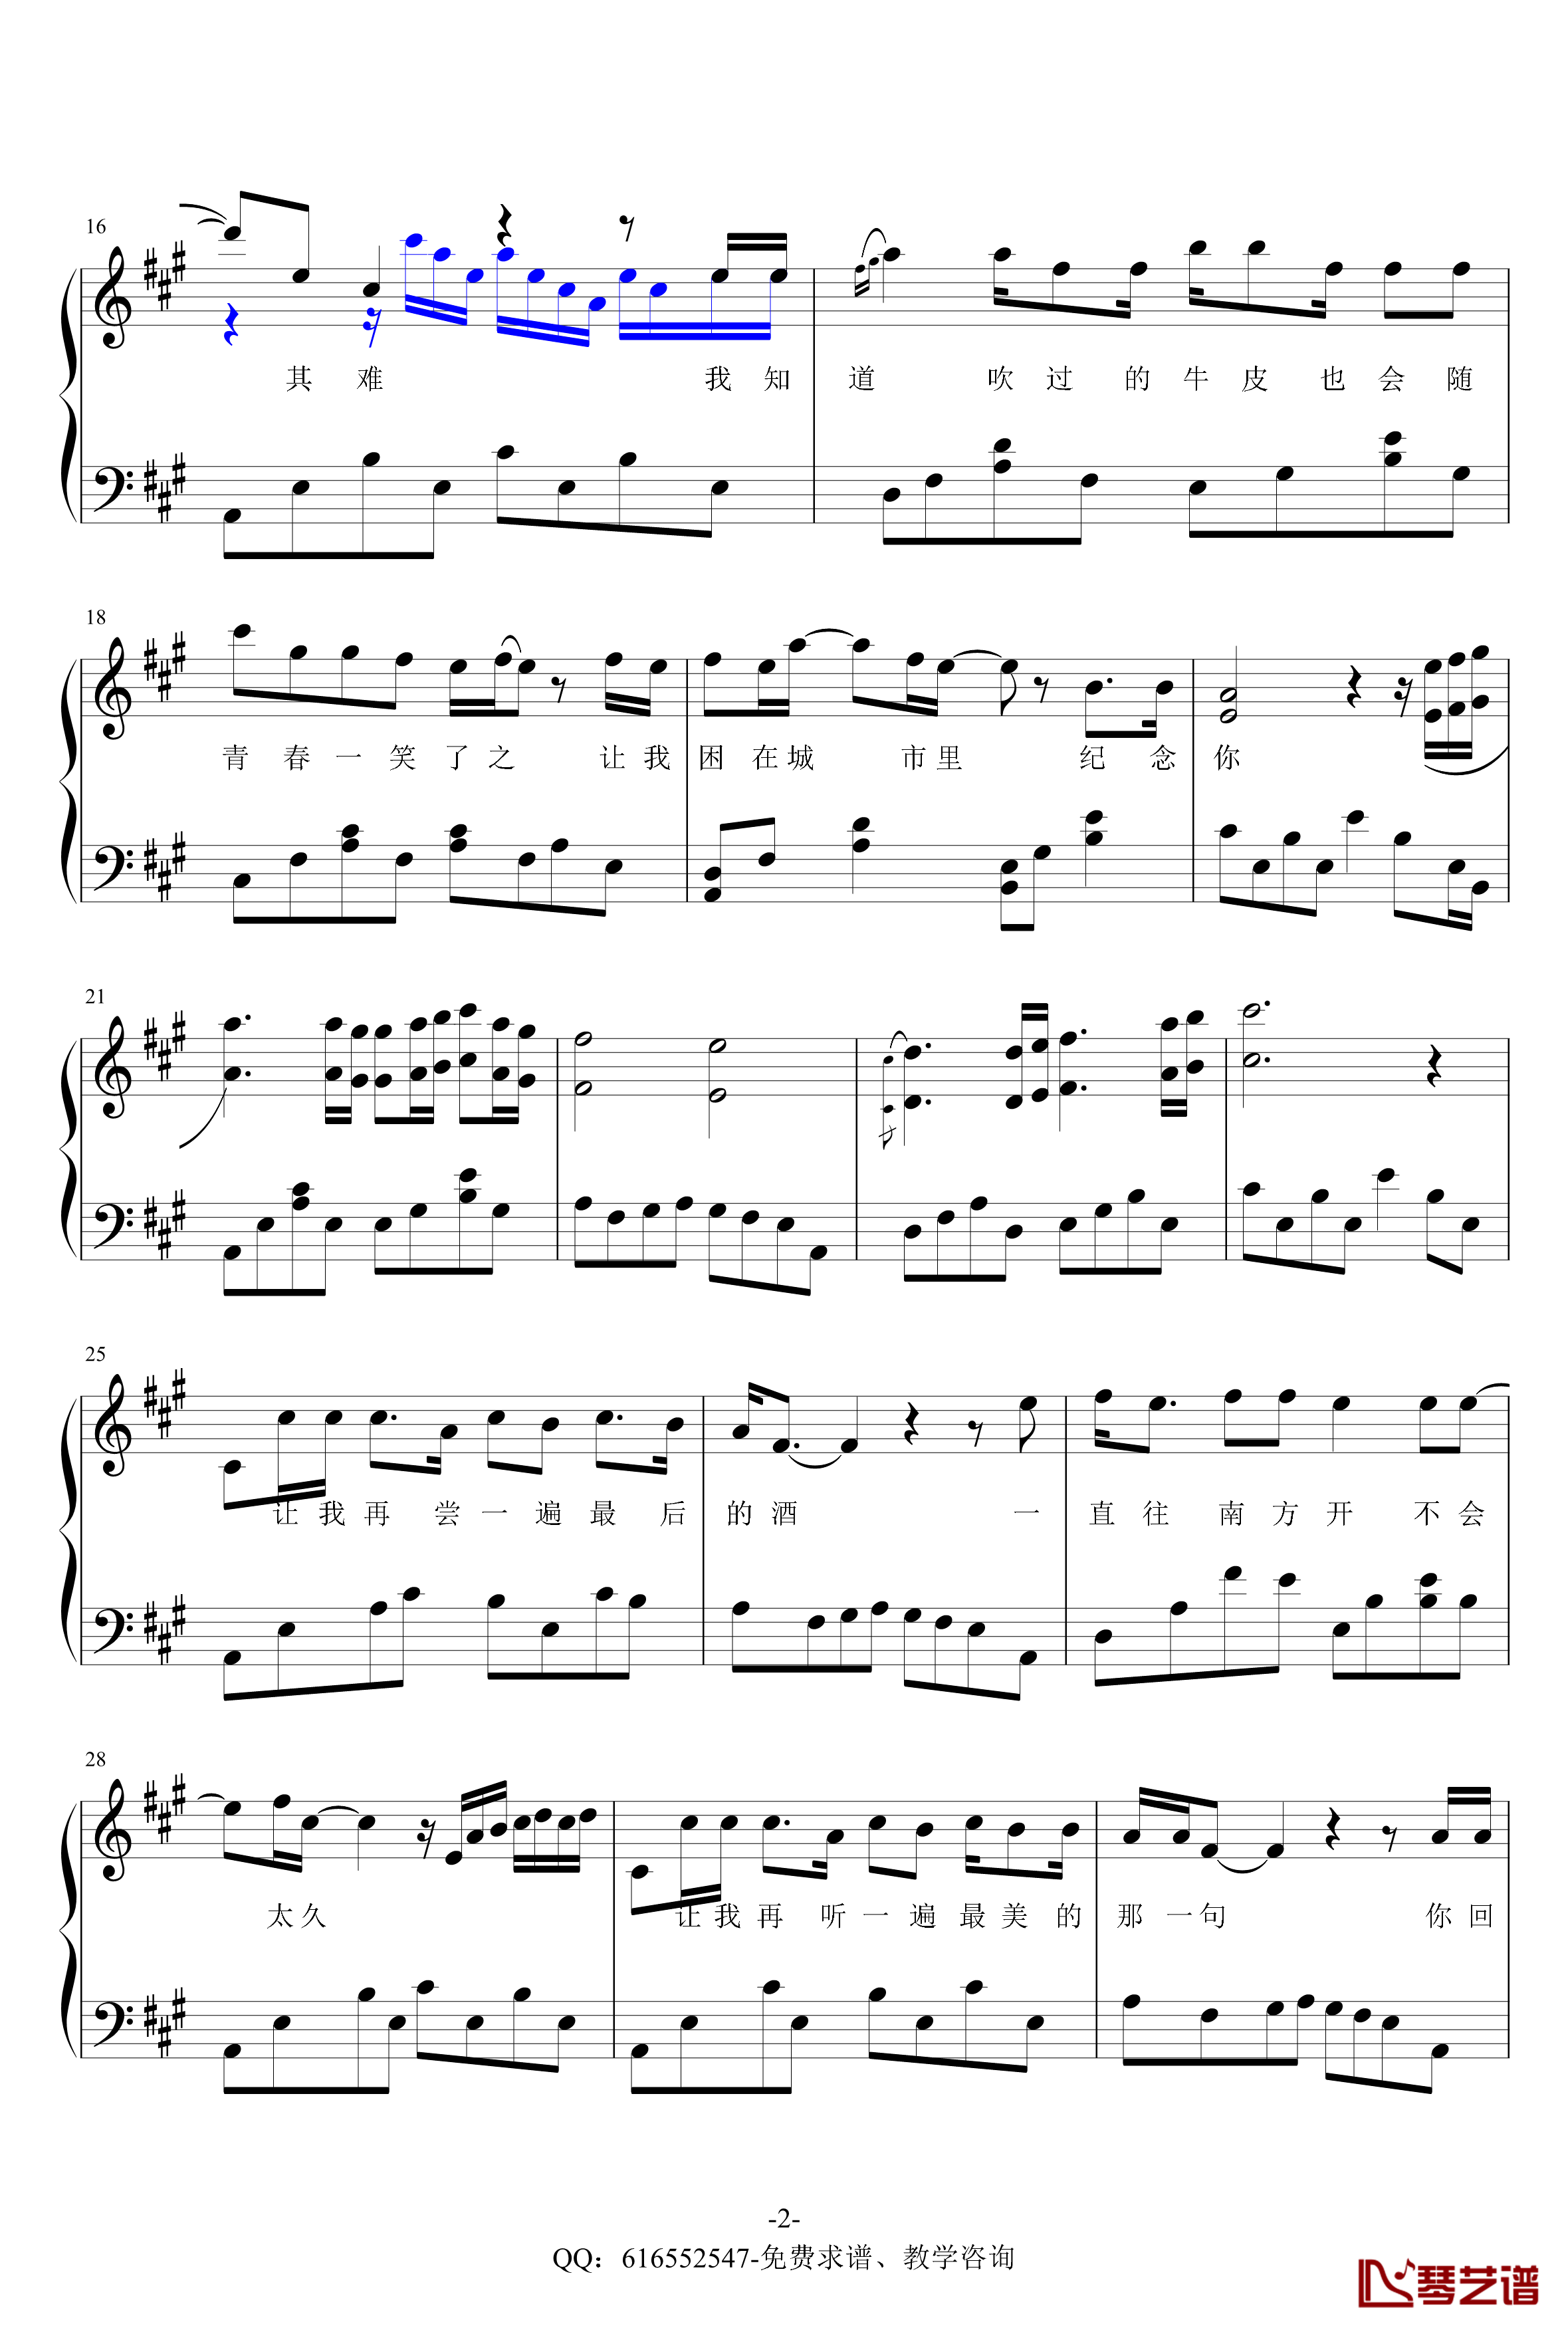 安和桥钢琴谱-金龙鱼原声独奏版170326-包师语2